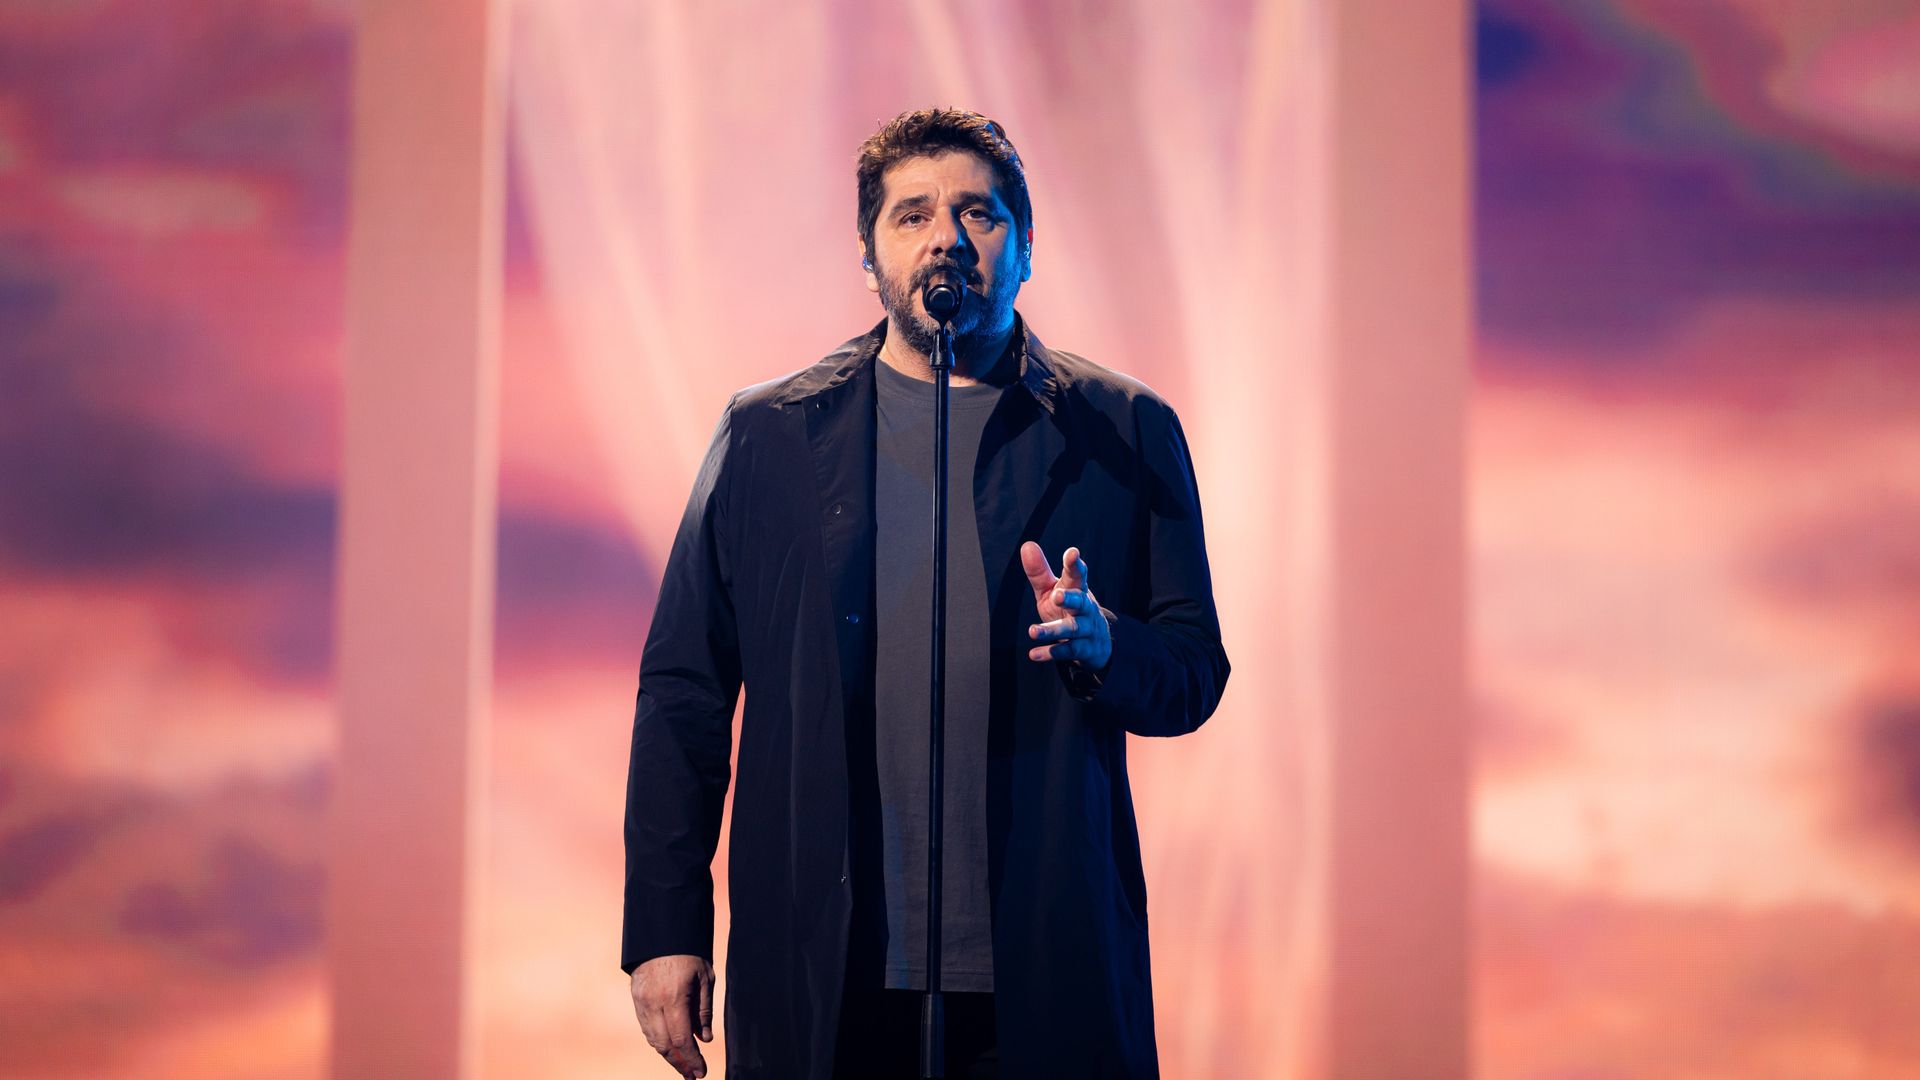 Patrick Fiori enflamme la scène de The Voice Belgique avec son dernier single "Le Chant est Libre"